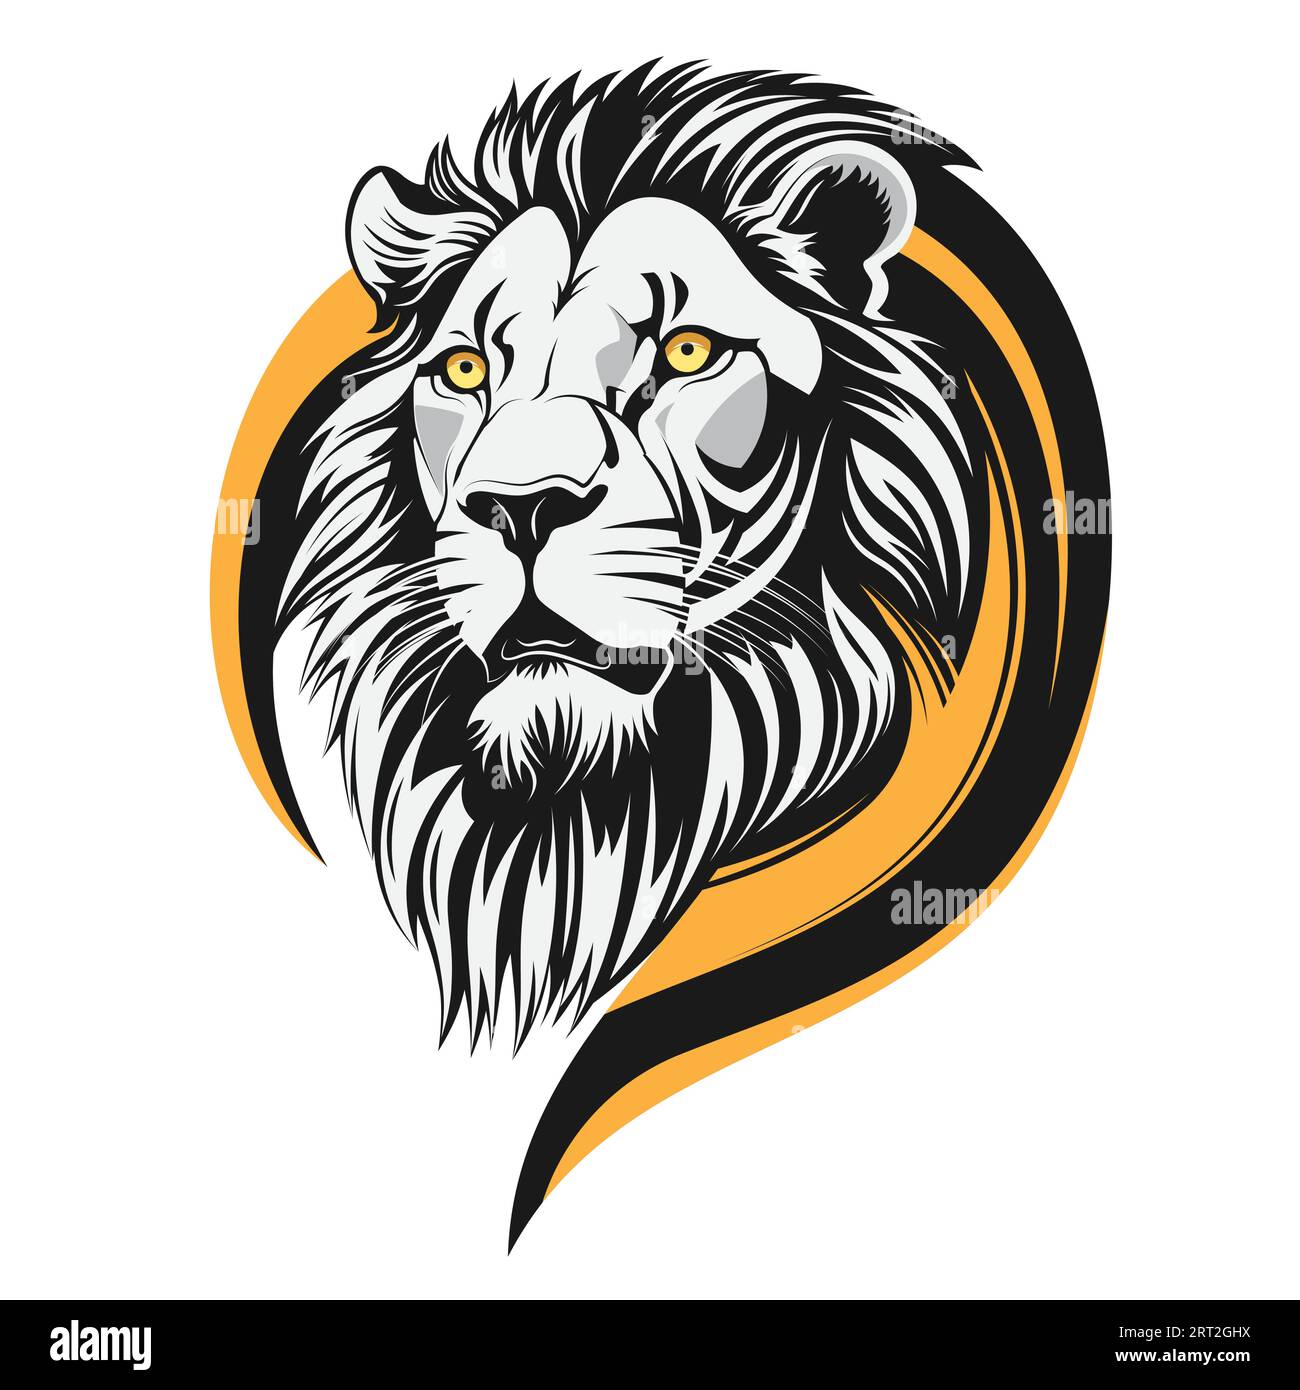 Lion noir et blanc avec des yeux jaunes illustration vectorielle. Tête de lion isolée avec un cercle jaune sur fond blanc Illustration de Vecteur